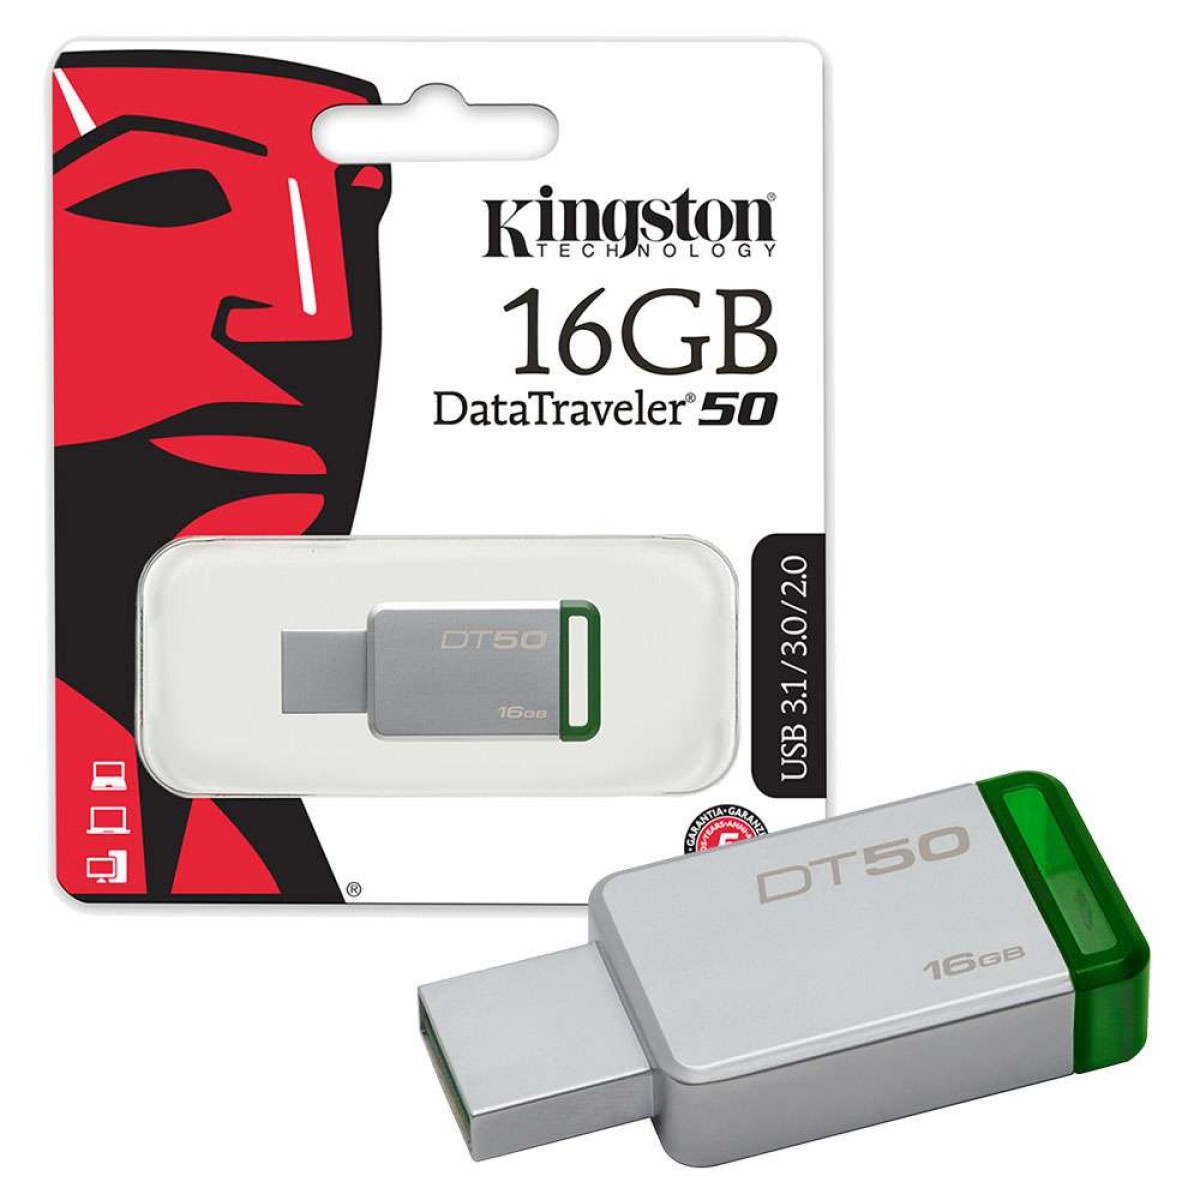 KINGSTON 16GB DT50 USB 3.0 Flash Drive